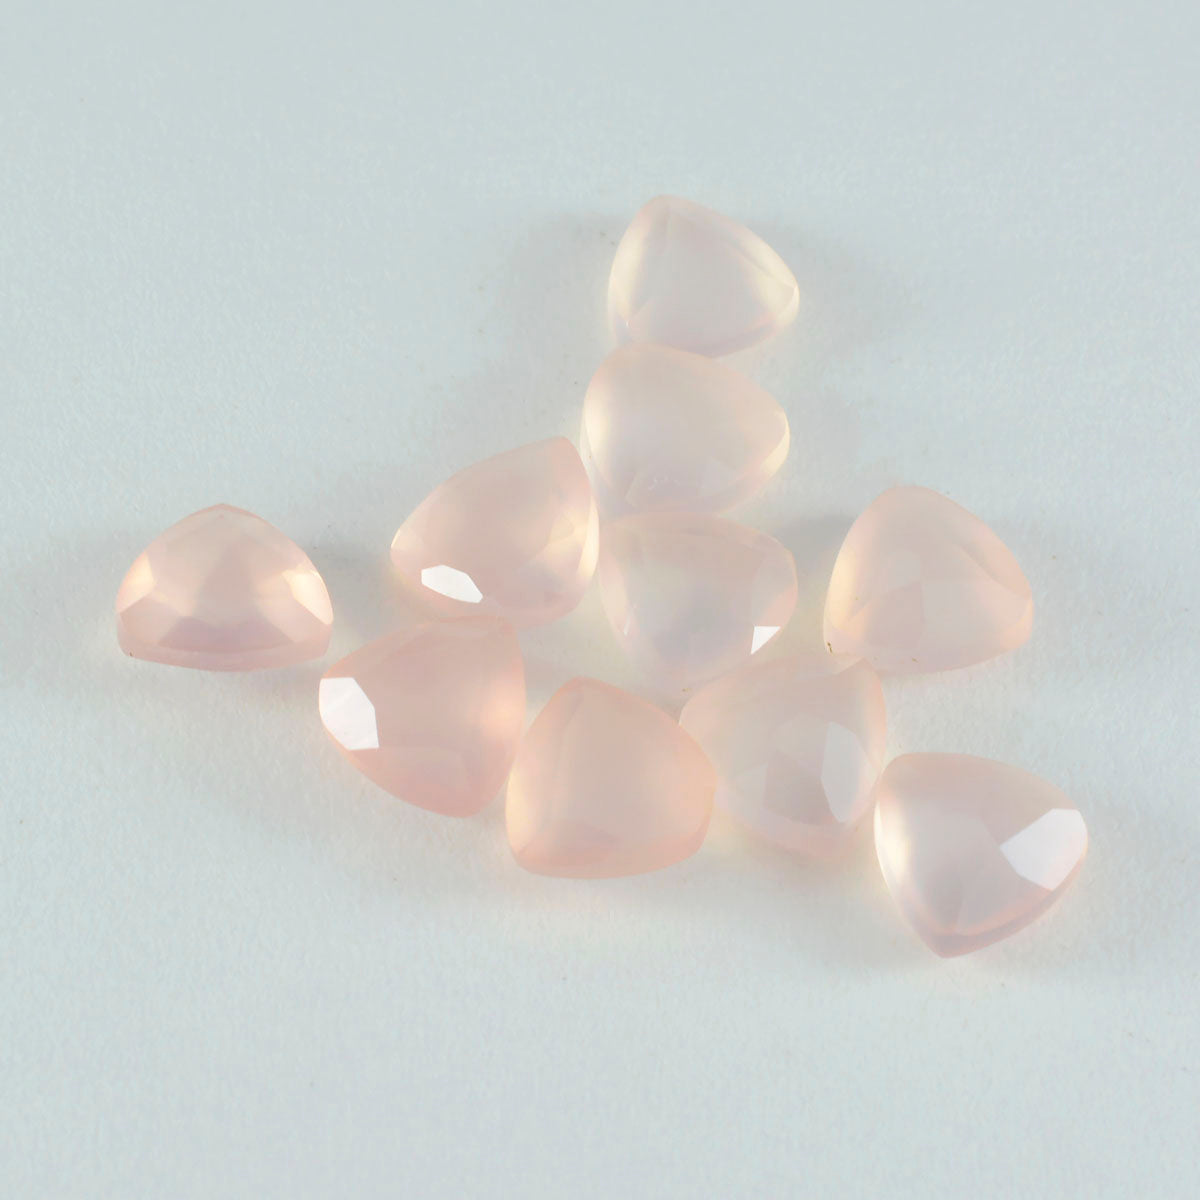 riyogems 1pc ピンク ローズ クォーツ ファセット 10x10 mm 兆形状 a+1 品質の宝石